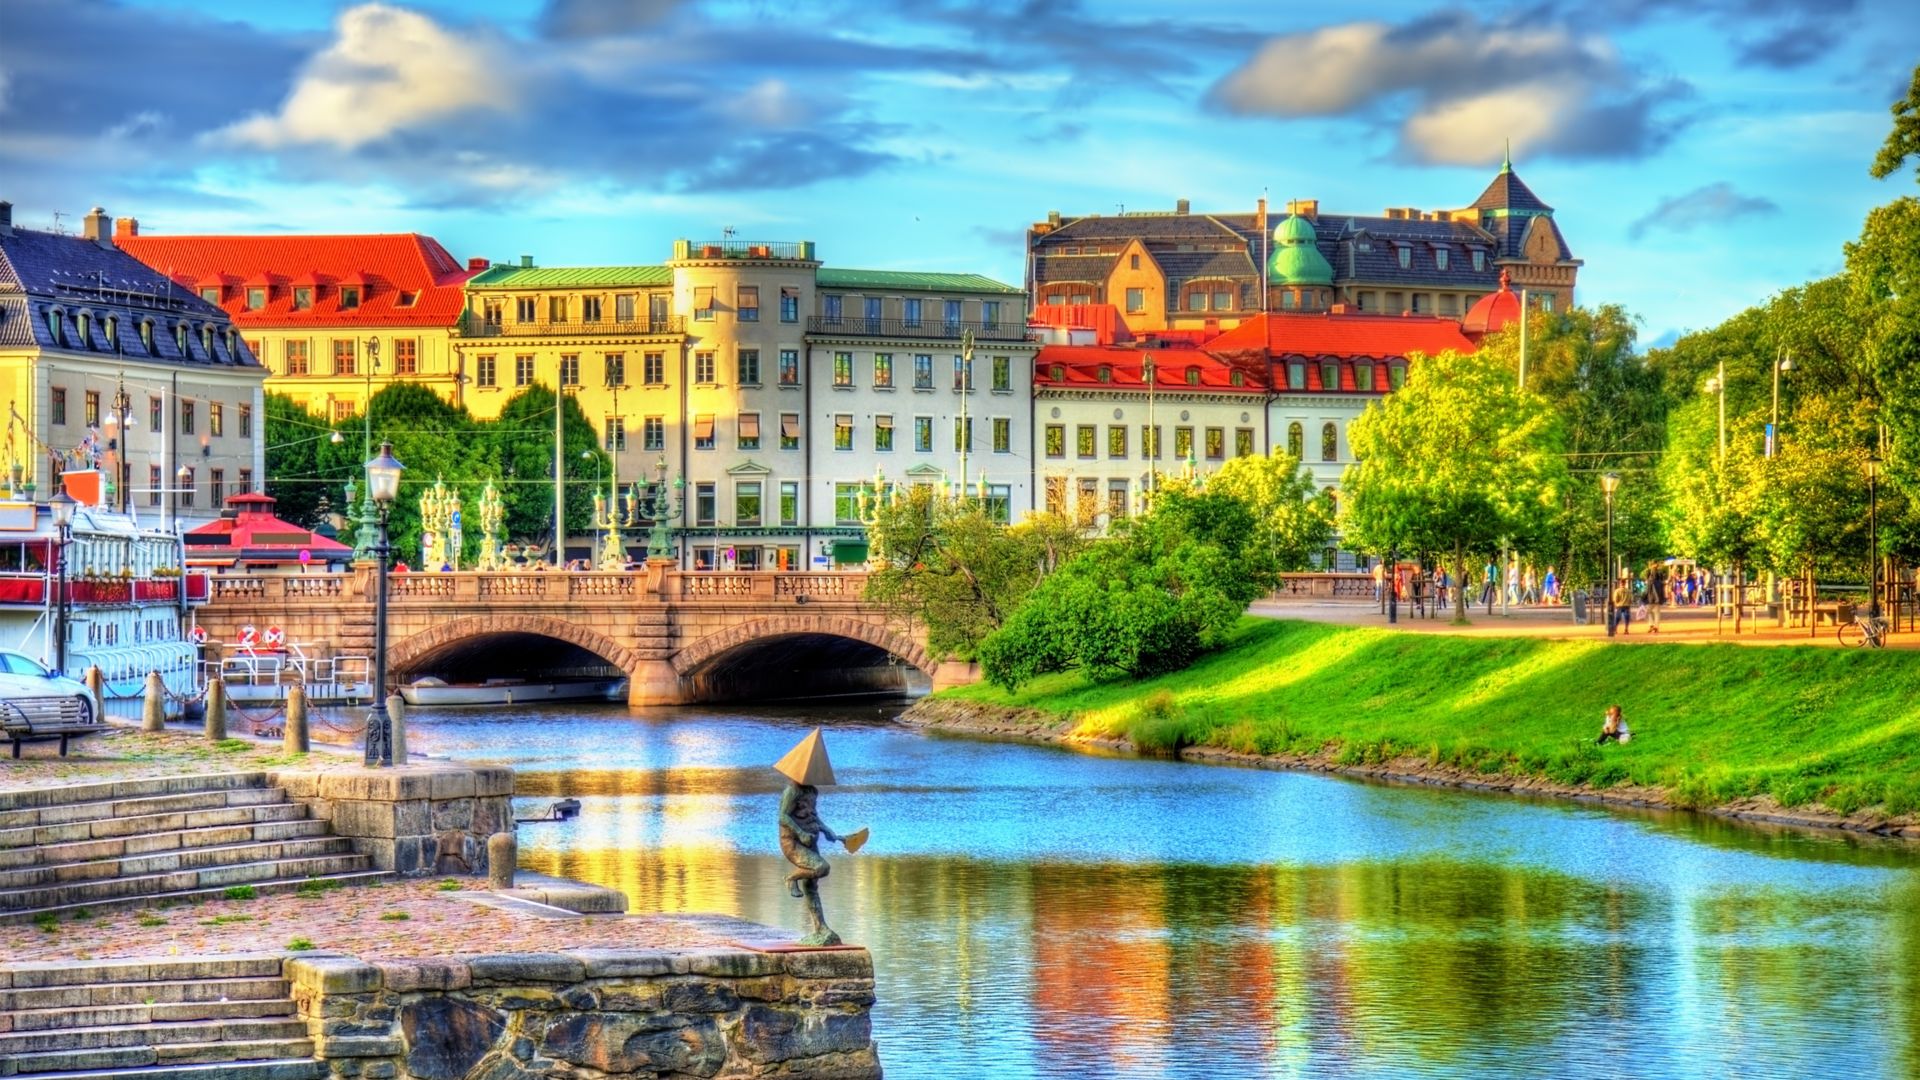 Canal dans le centre historique de Göteborg, Suède.